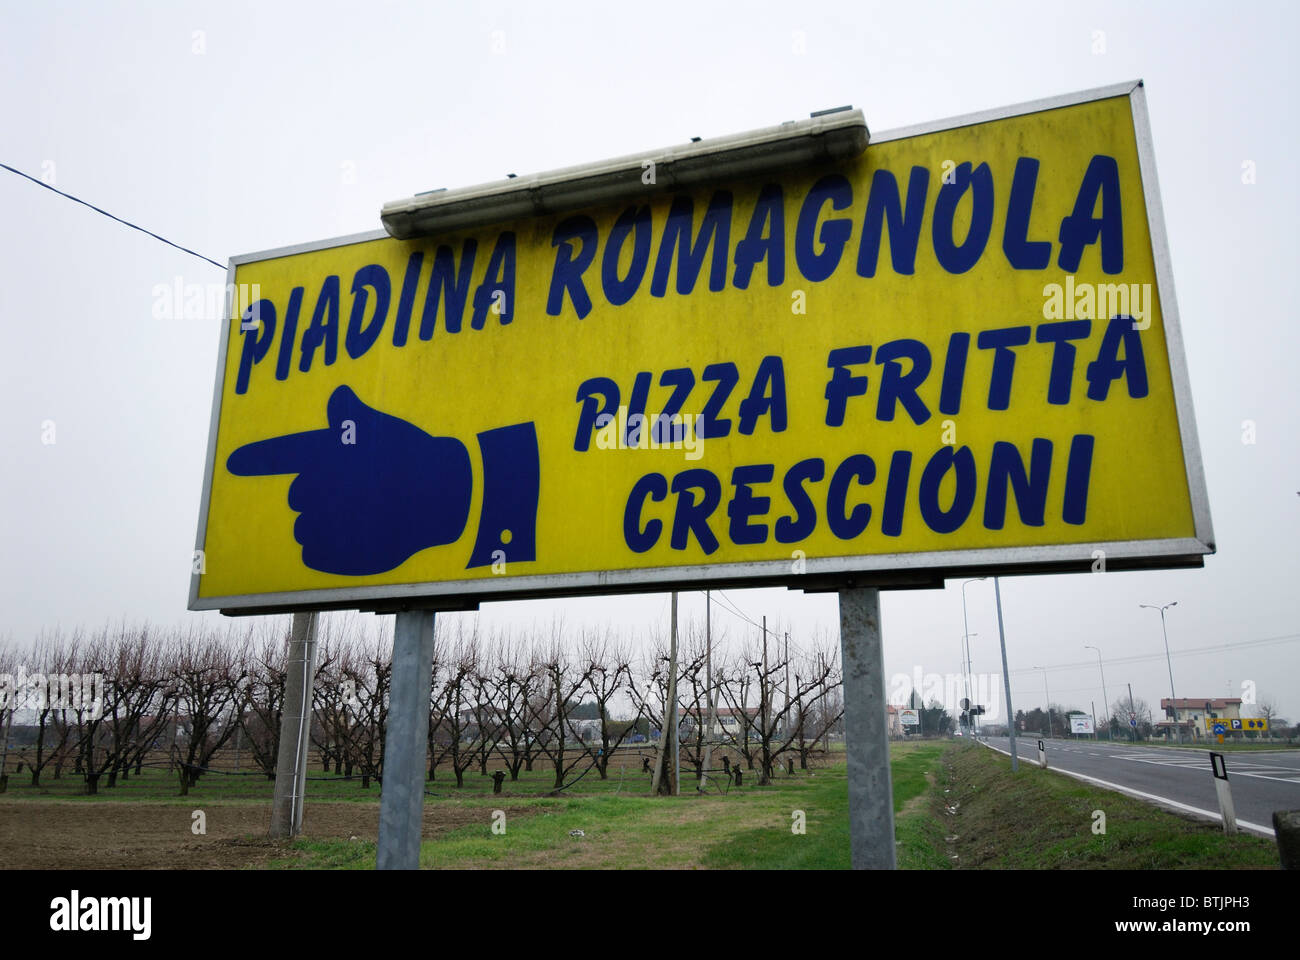 Ravenna. Italy. Roadside sign indicating piadina romagnola. Stock Photo